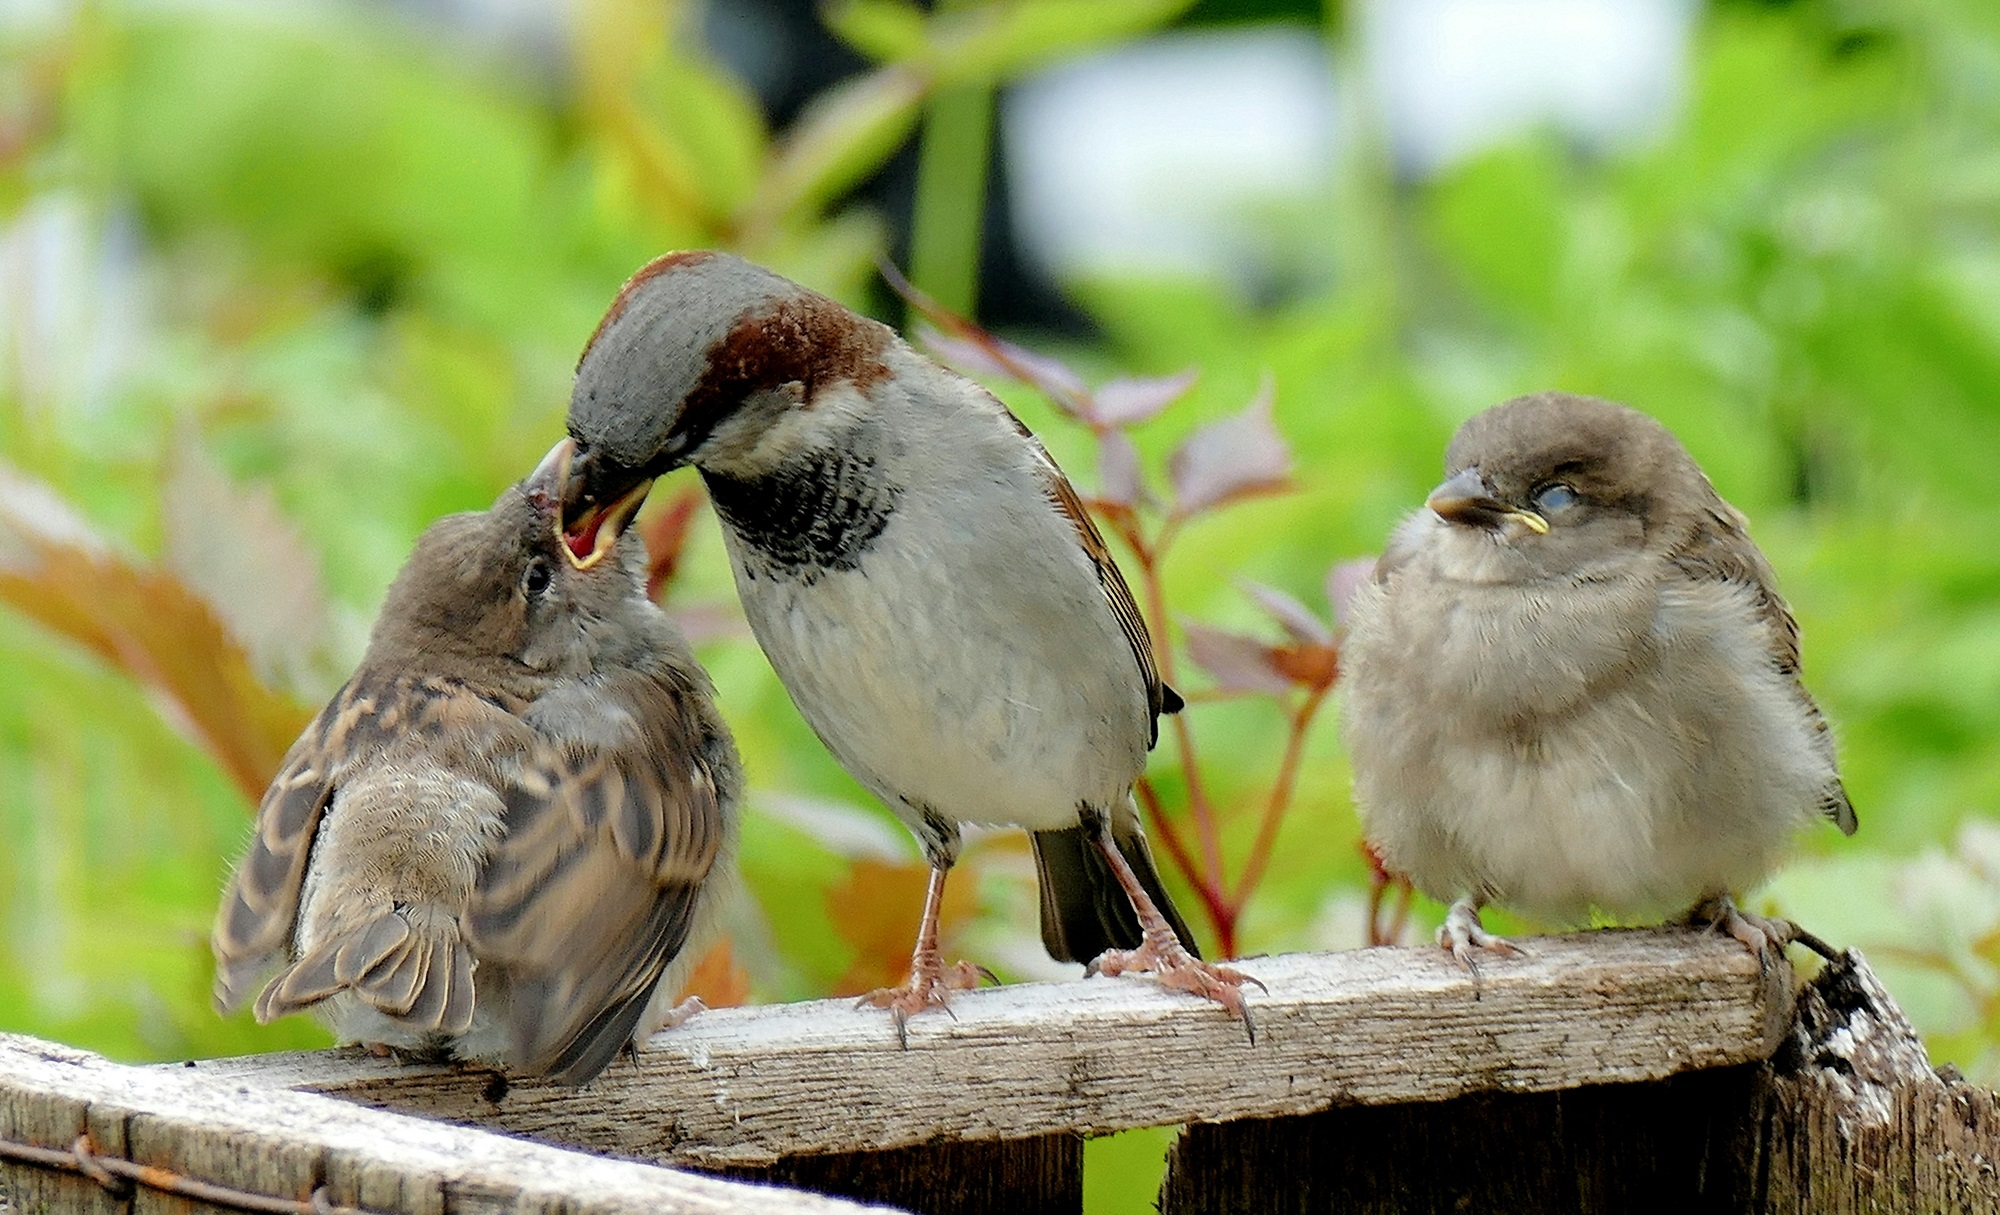 Le mystère des oiseaux qui mangent des excréments intrigue les scientifiques